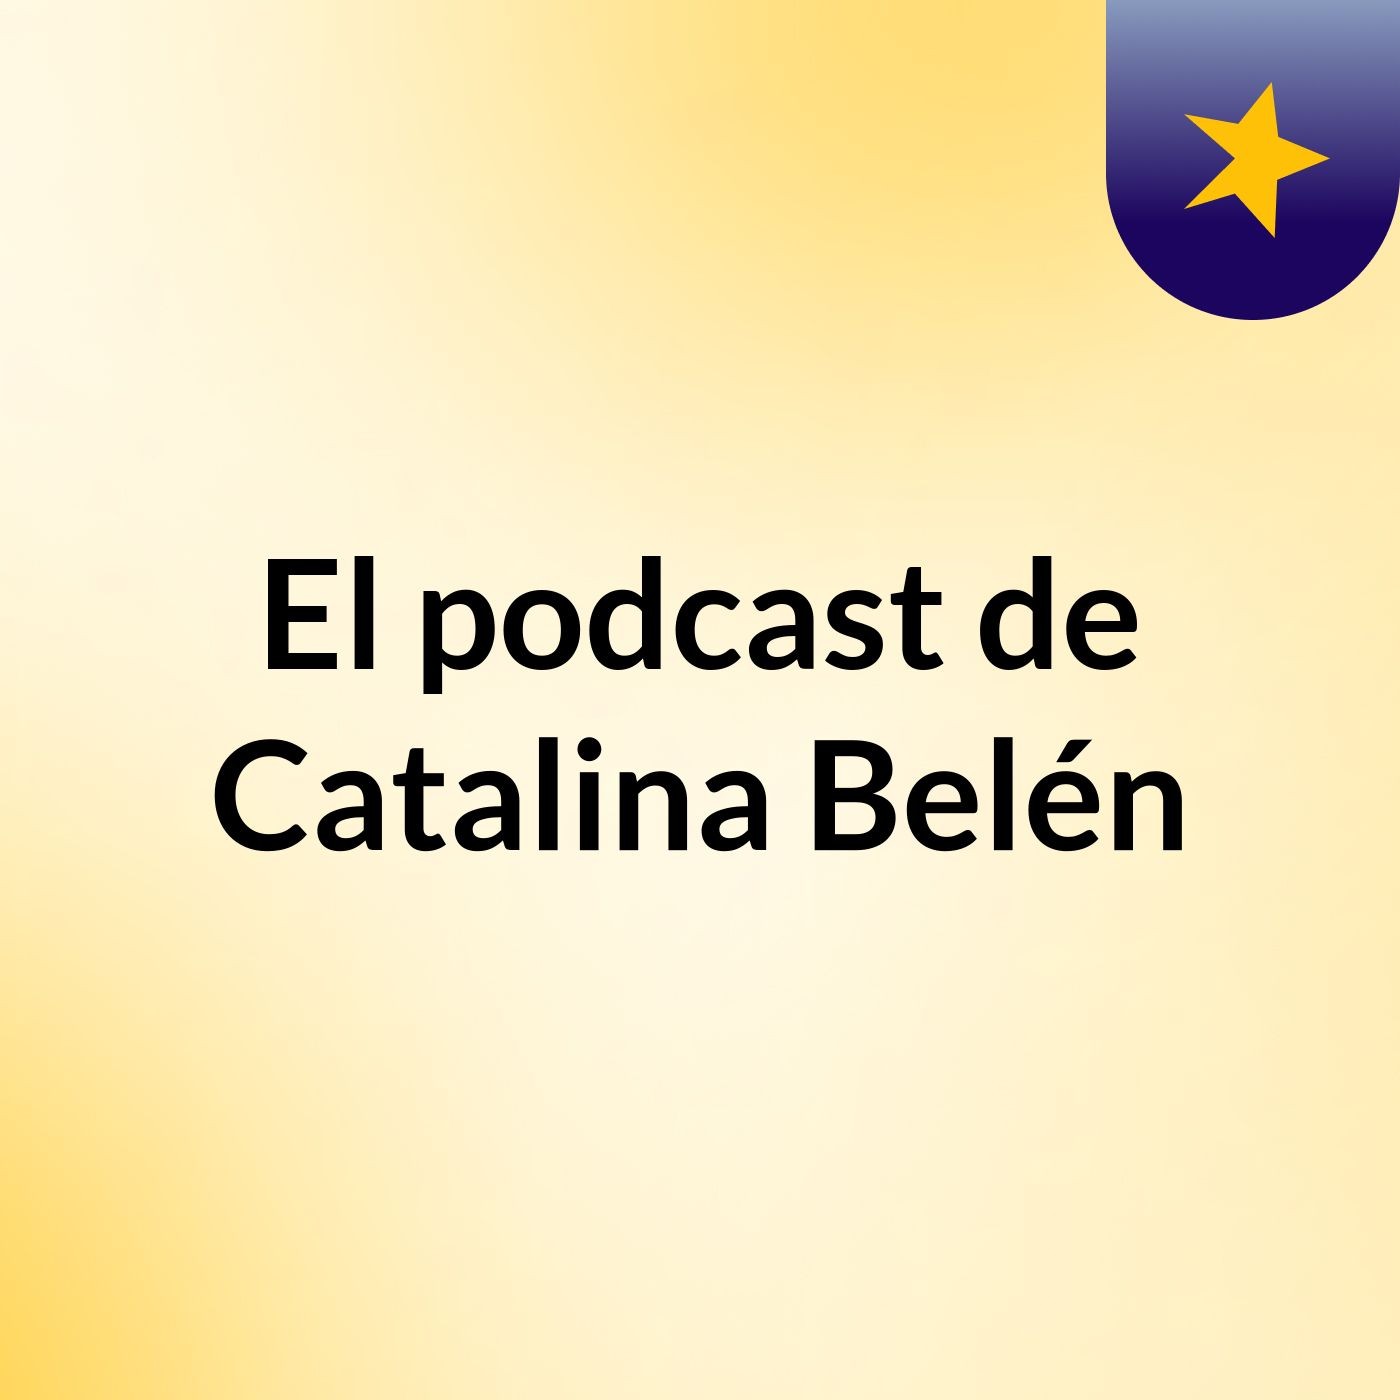 Episodio 5 - El podcast de Catalina Belén